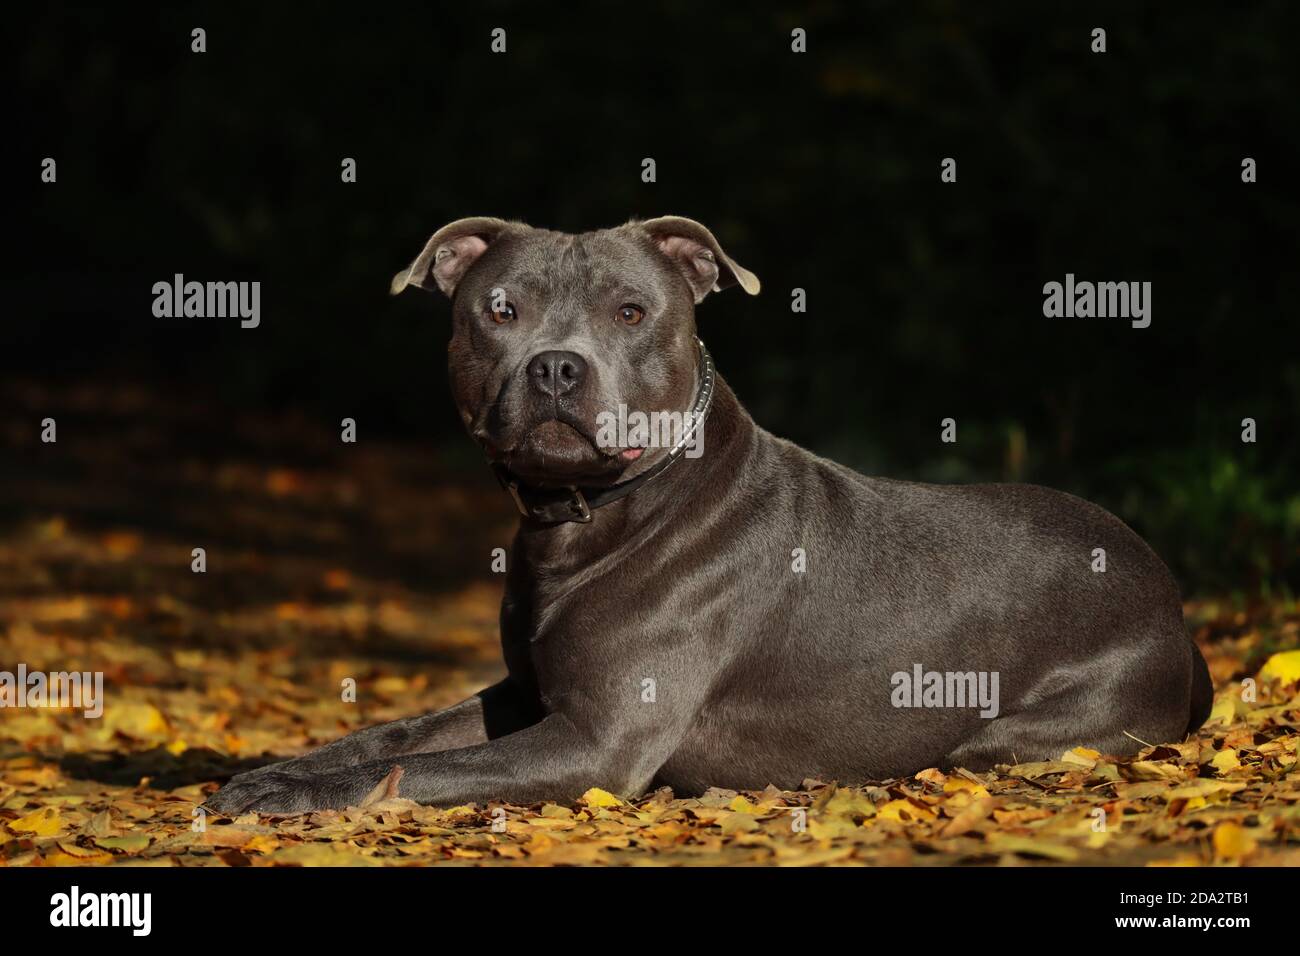 Serious Staffordshire Bull Terrier liegt auf bunten Herbst fallen Blätter. Liebenswert blau Staffy in der Natur während der Herbstsaison mit dunklen Hintergrund. Stockfoto